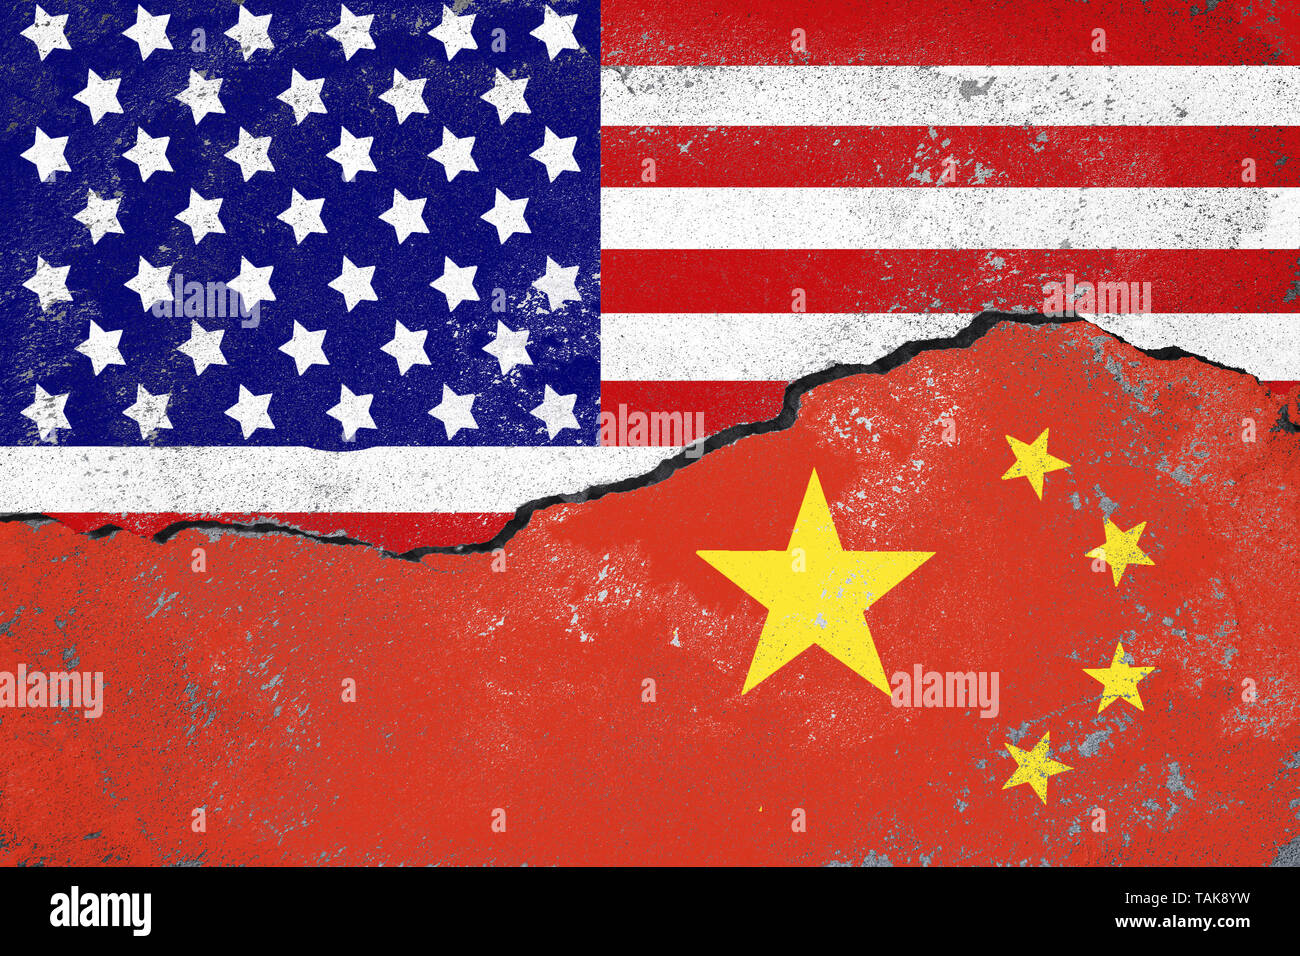 Stati Uniti e Cina il concetto di conflitto.Le bandiere di Stati Uniti e Cina dipinta sulla parete incrinata. Foto Stock